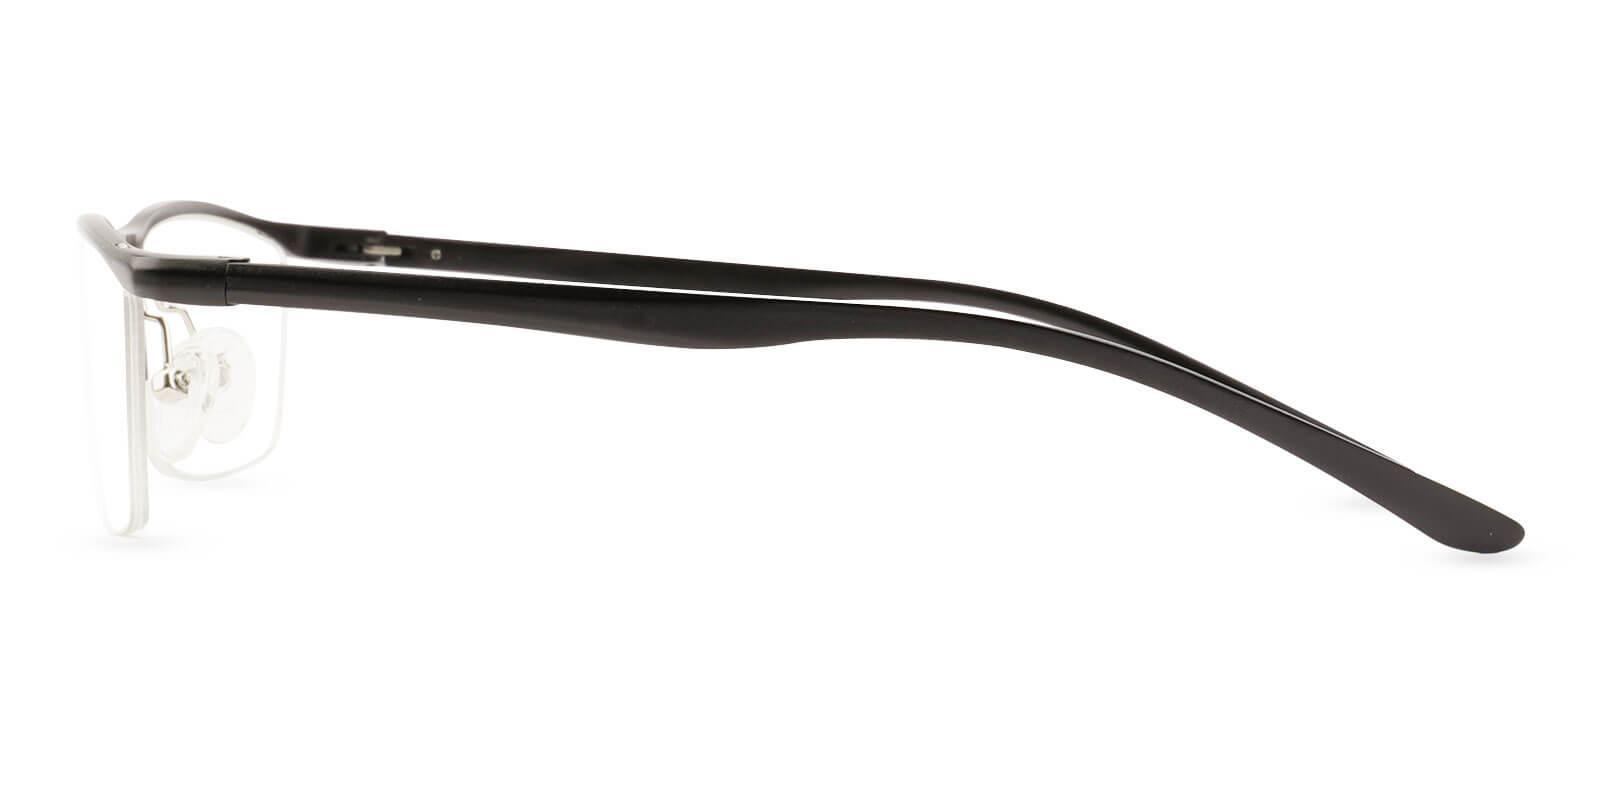 Vital Black Metal NosePads , SportsGlasses , SpringHinges Frames from ABBE Glasses